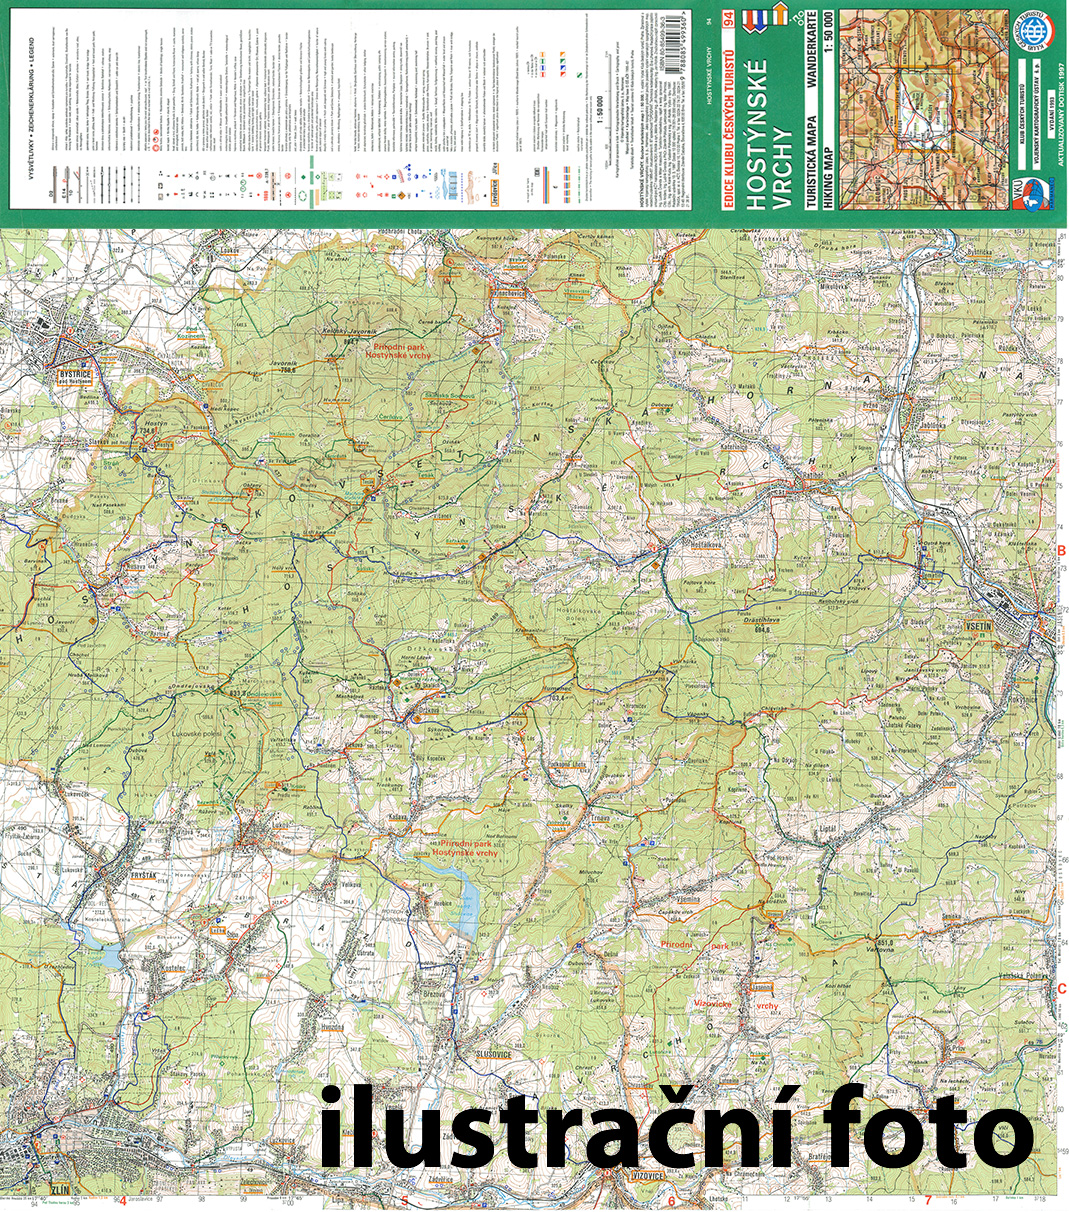 Nástěnná mapa Třeboňsko a horní Lužnice - turistická (75)